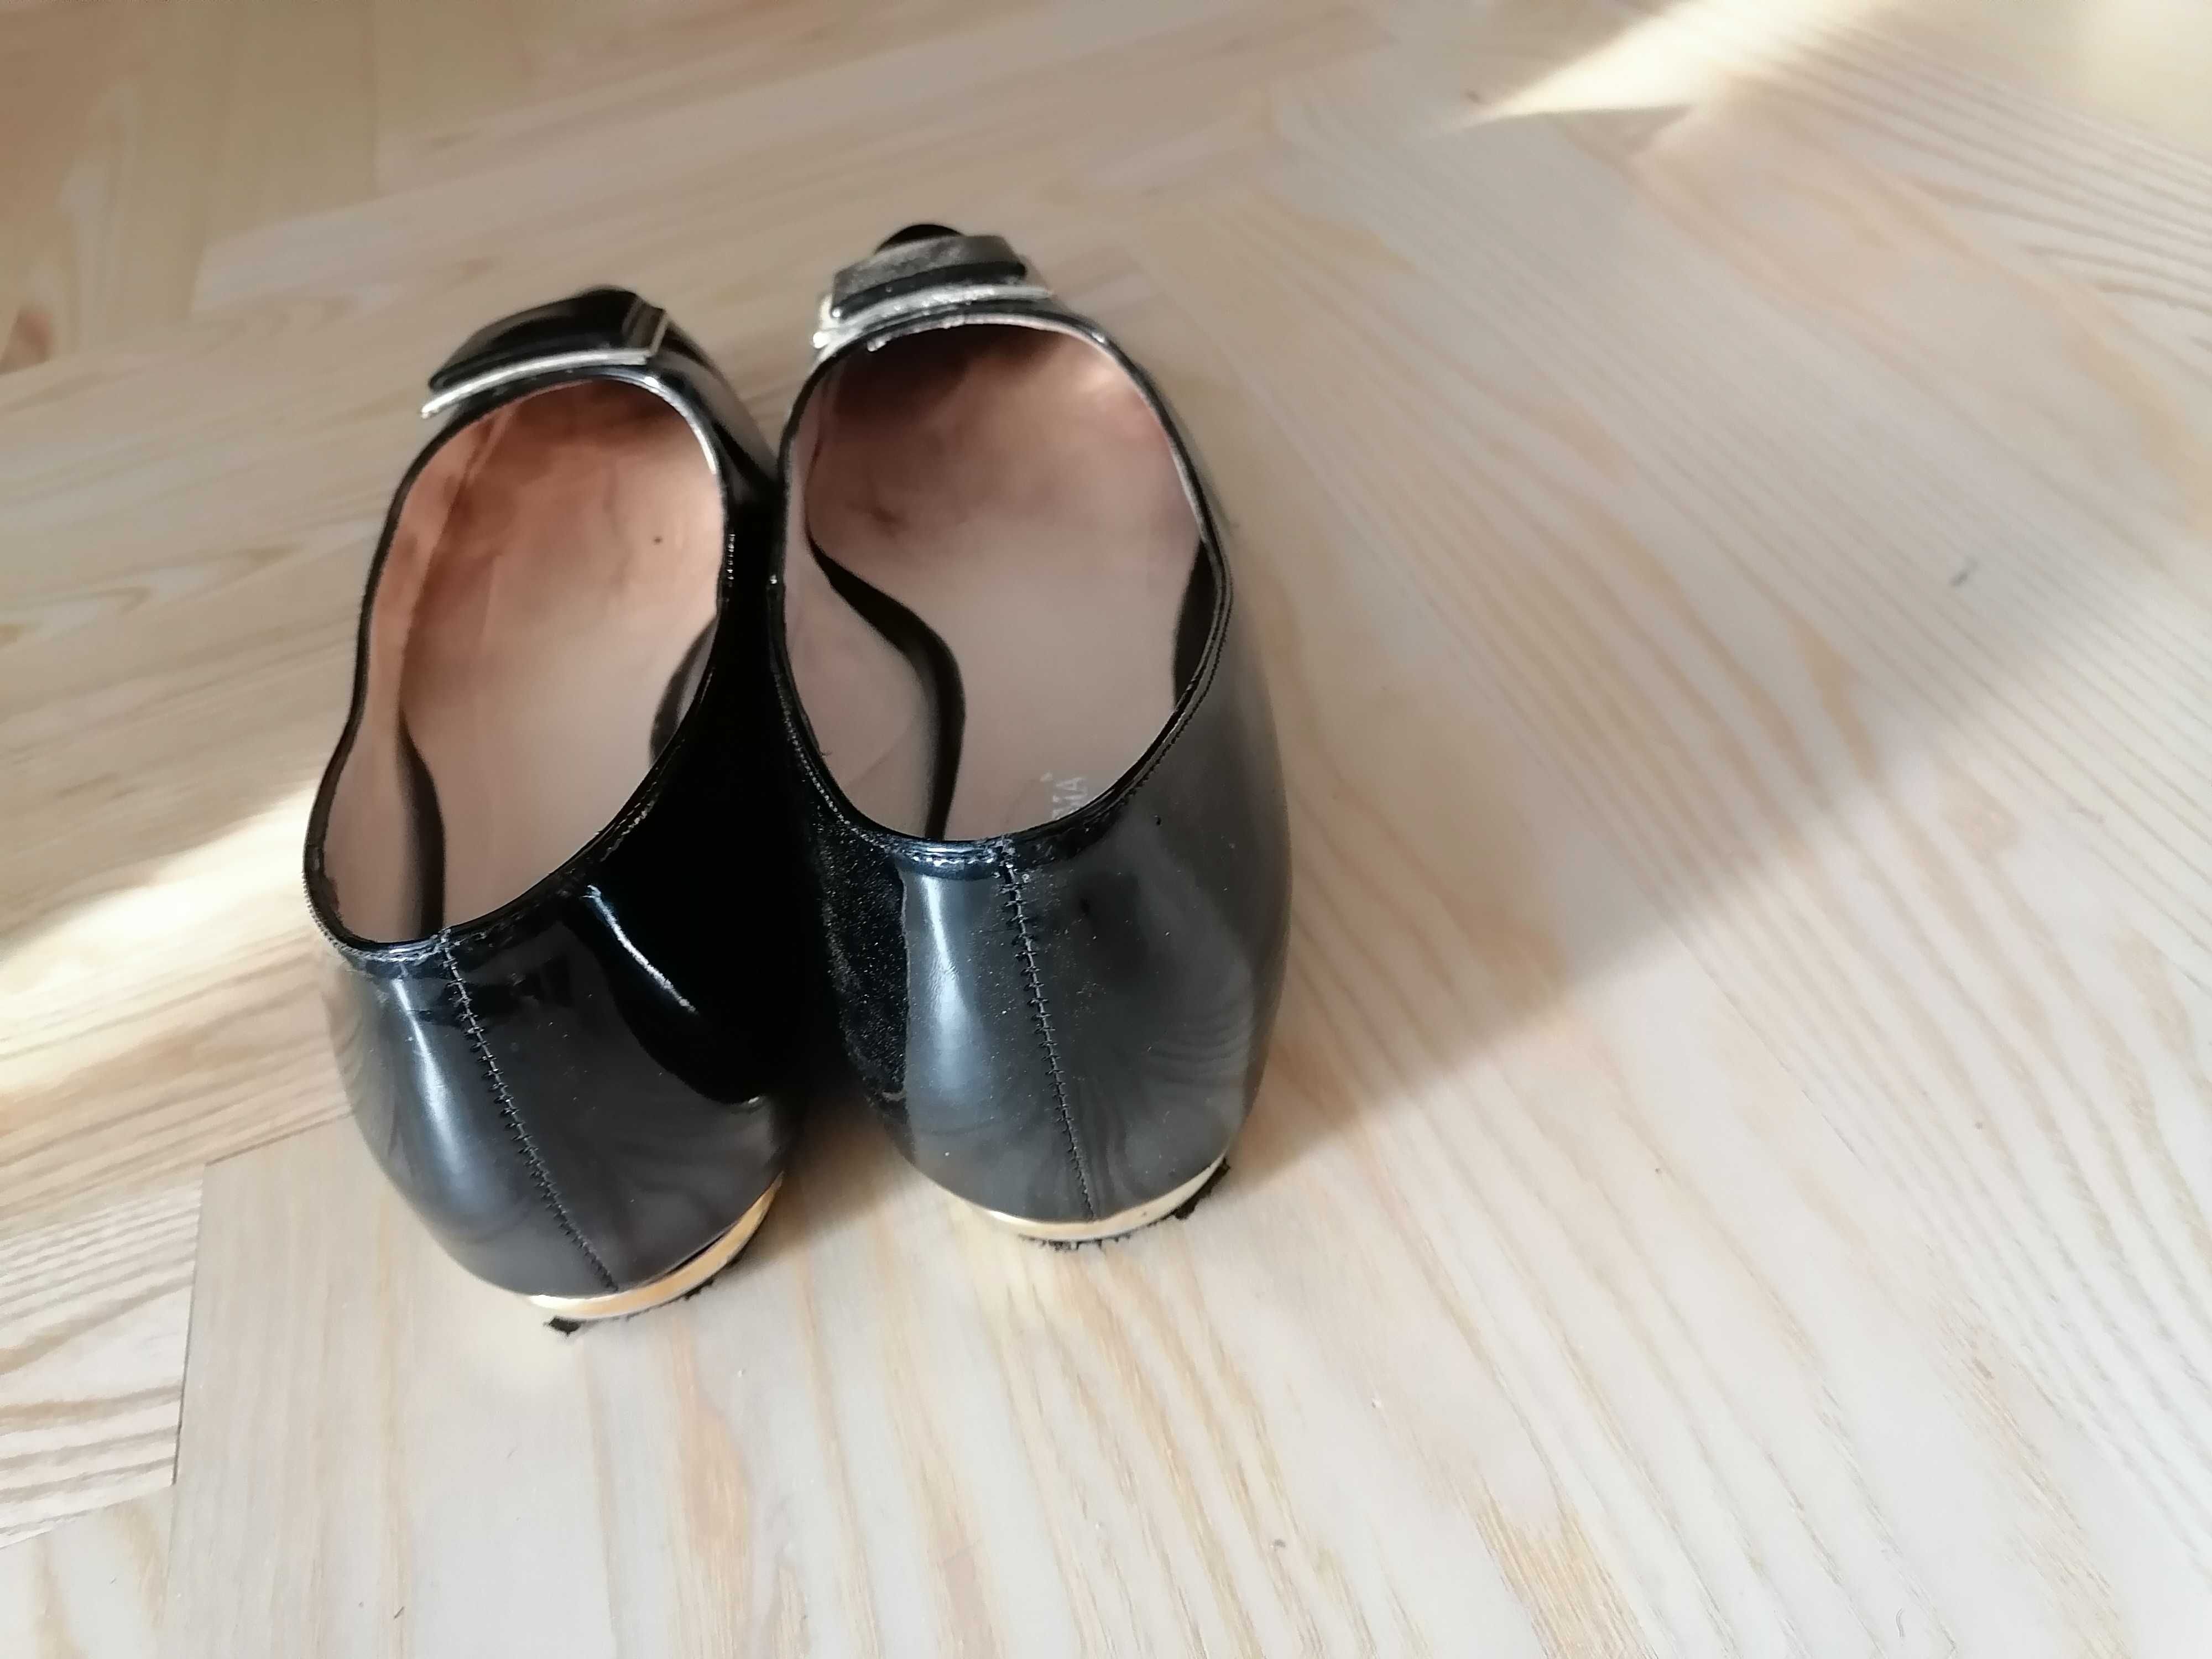 Buty czarne lakierowane